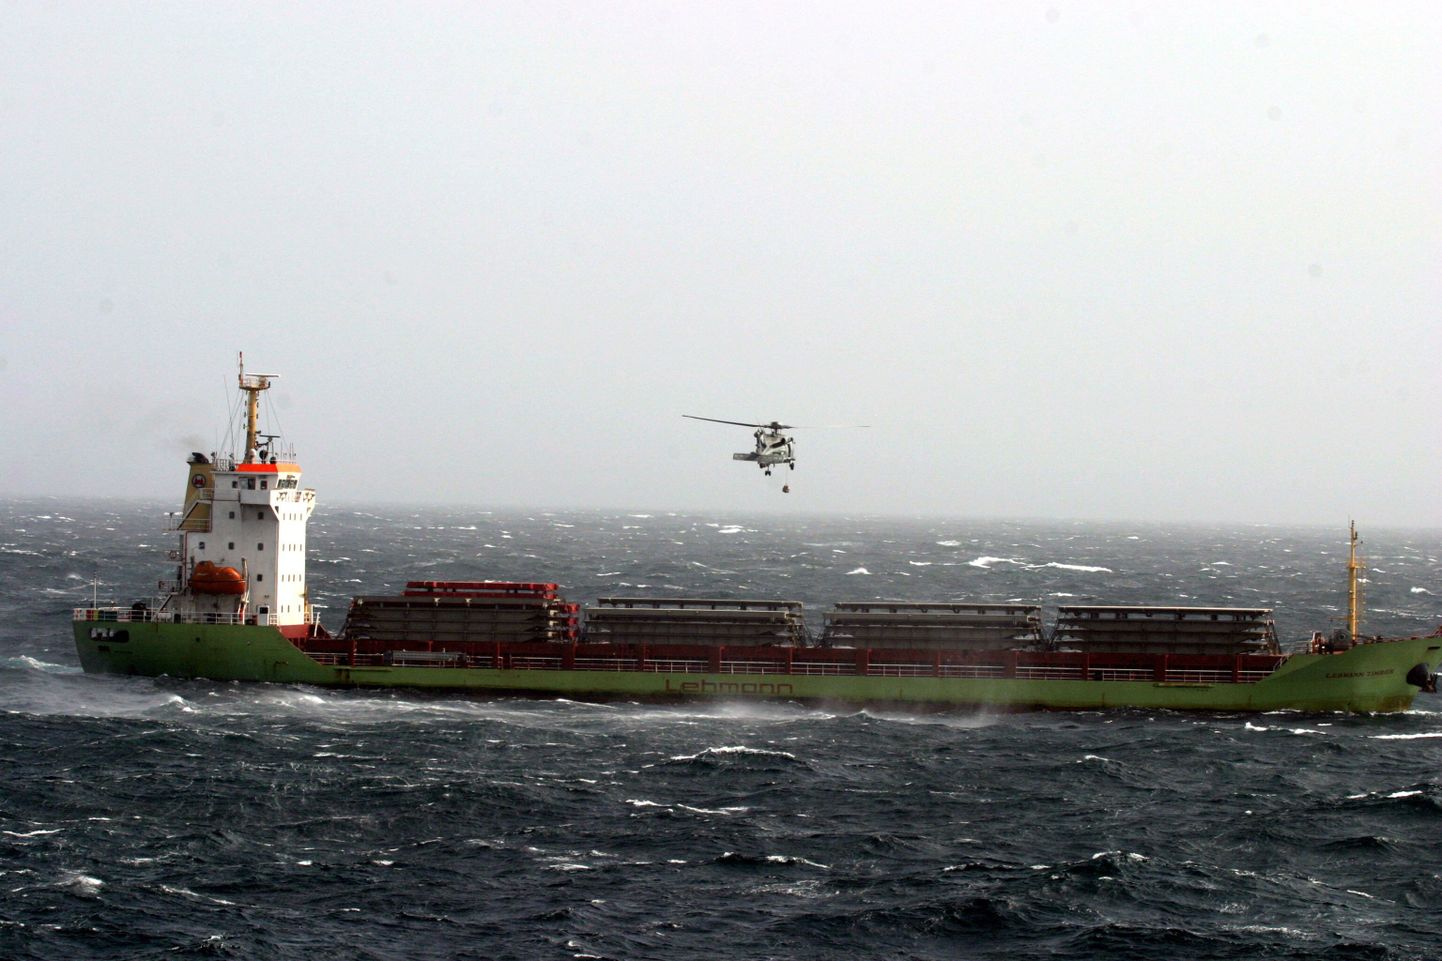 USA mereväealuse USS Momsen helikopter SH-60 Seahawk viimas vett ja toitu triivivale Saksa kaubalaevale MV Lehmann Timber, mille pardal on ka eestlasest tüürimees Ardo Kalle.